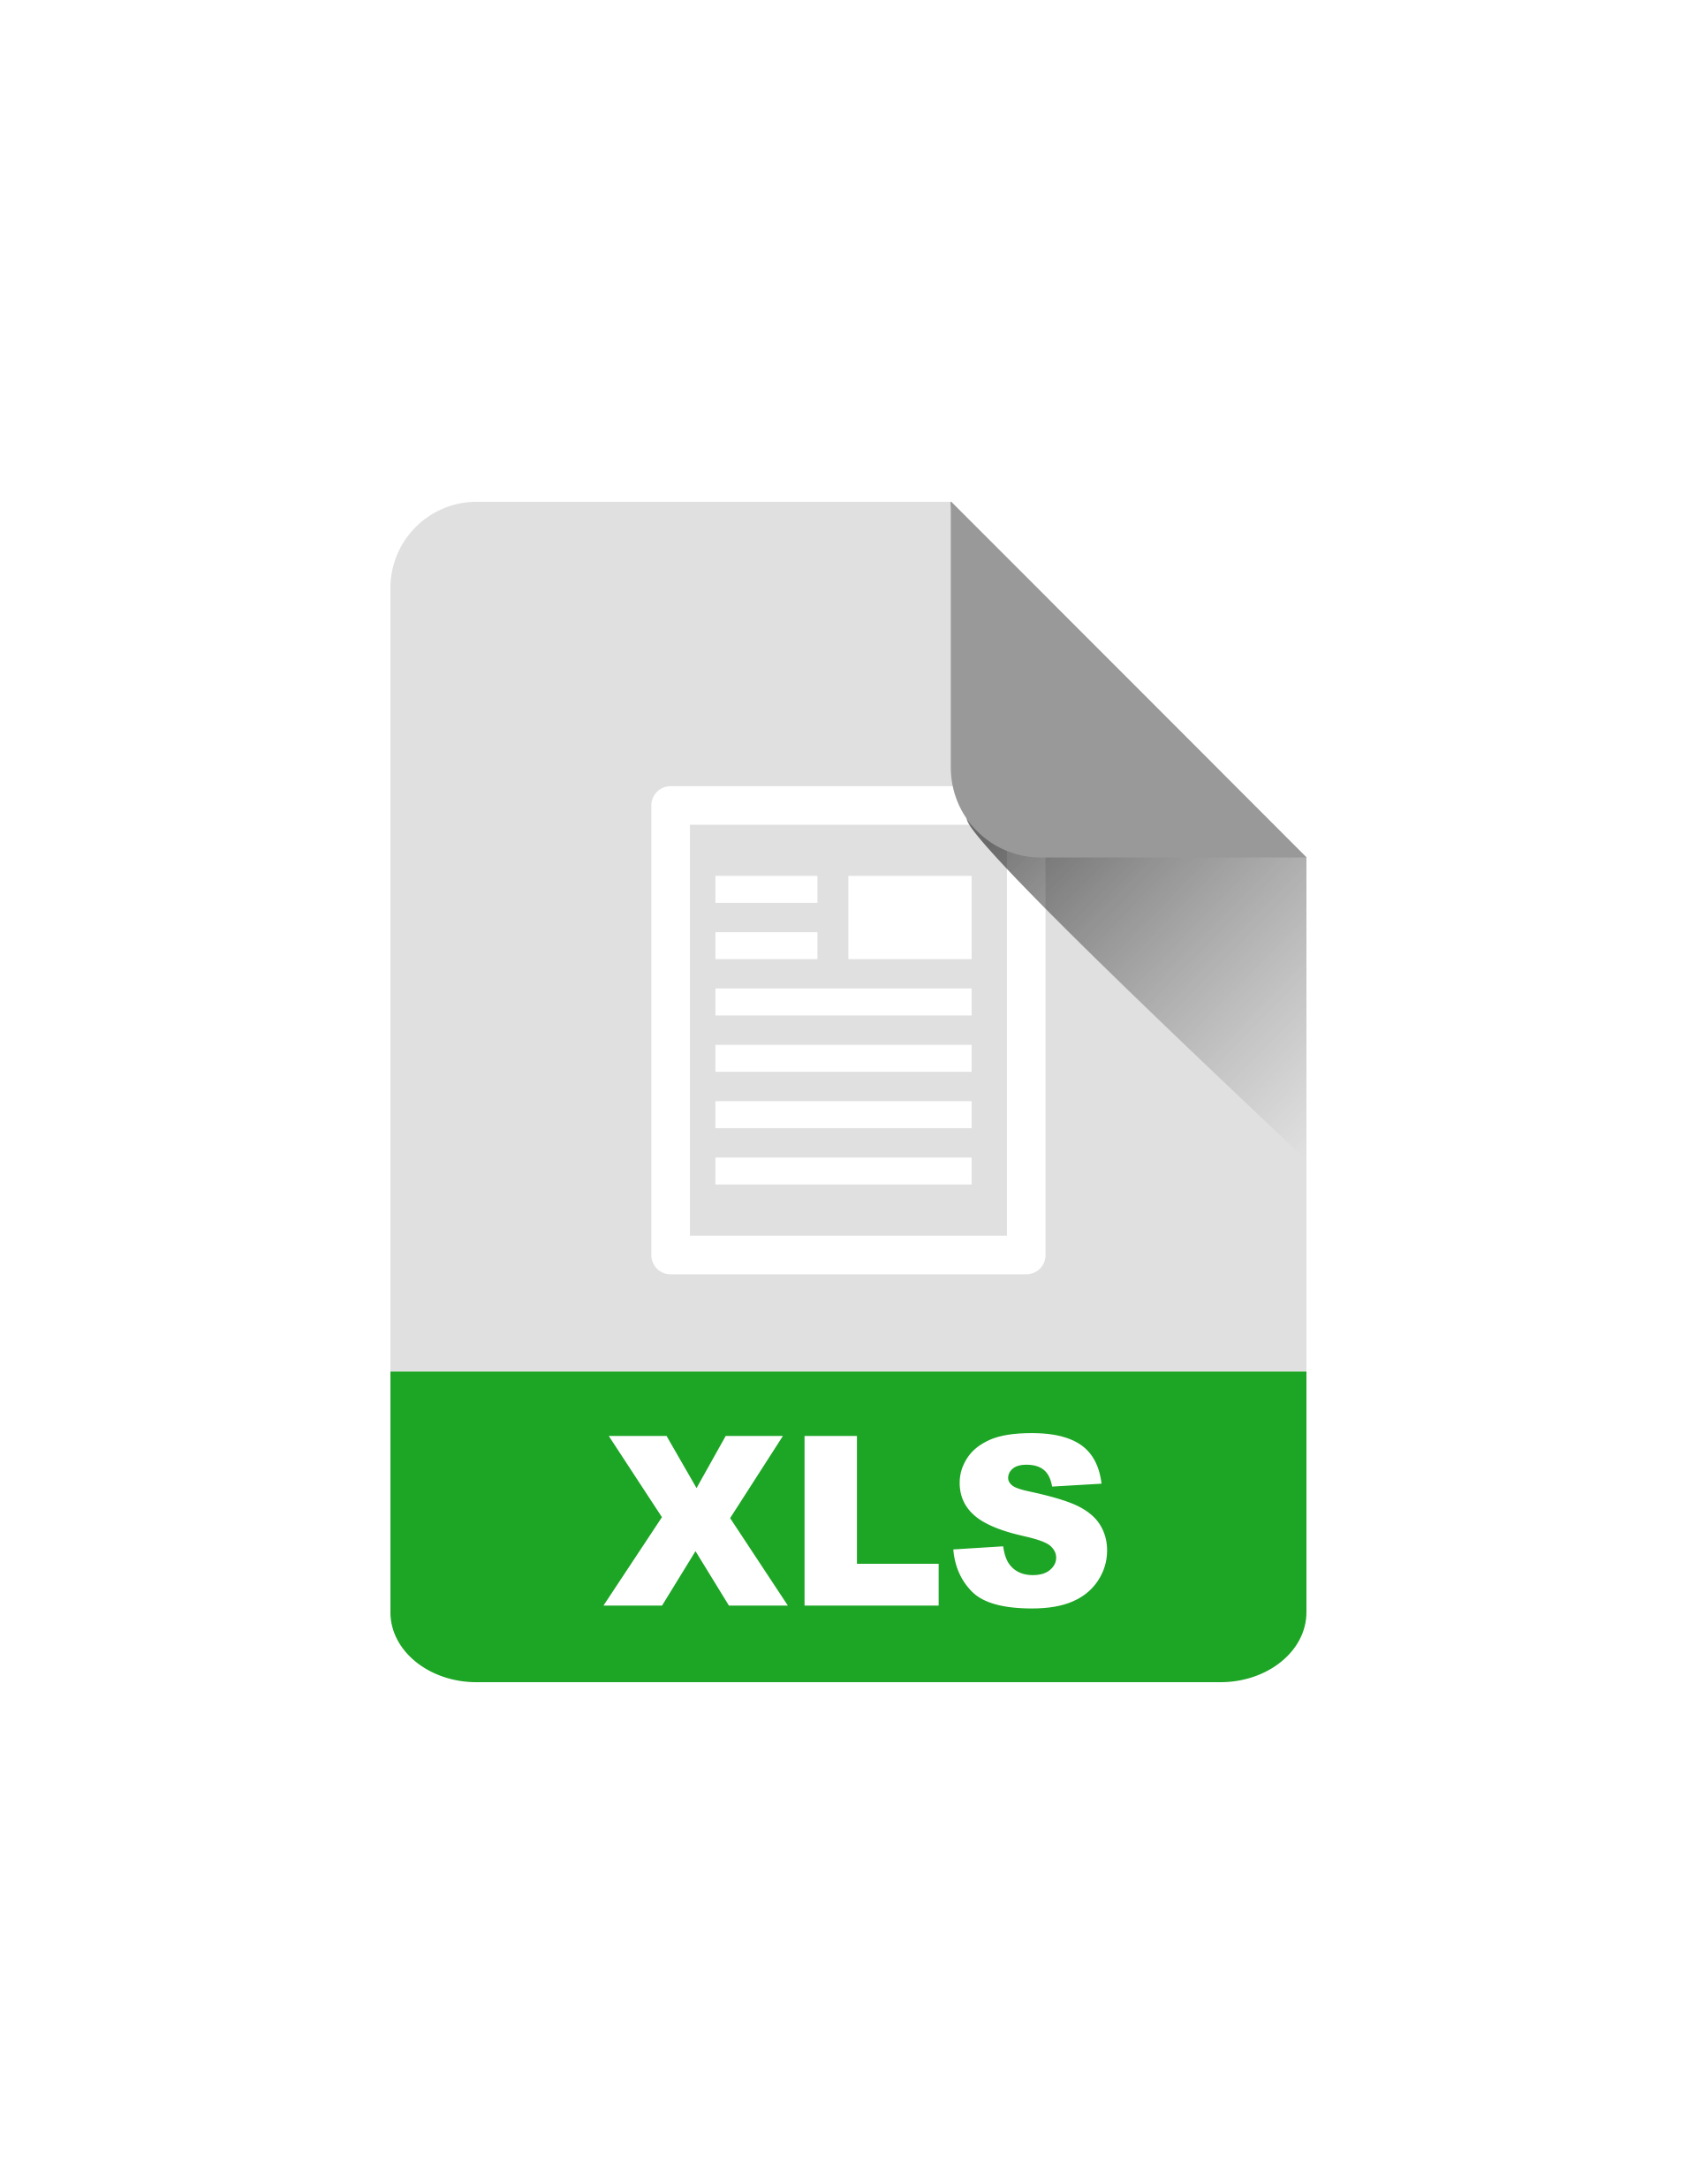 XLS文档图标